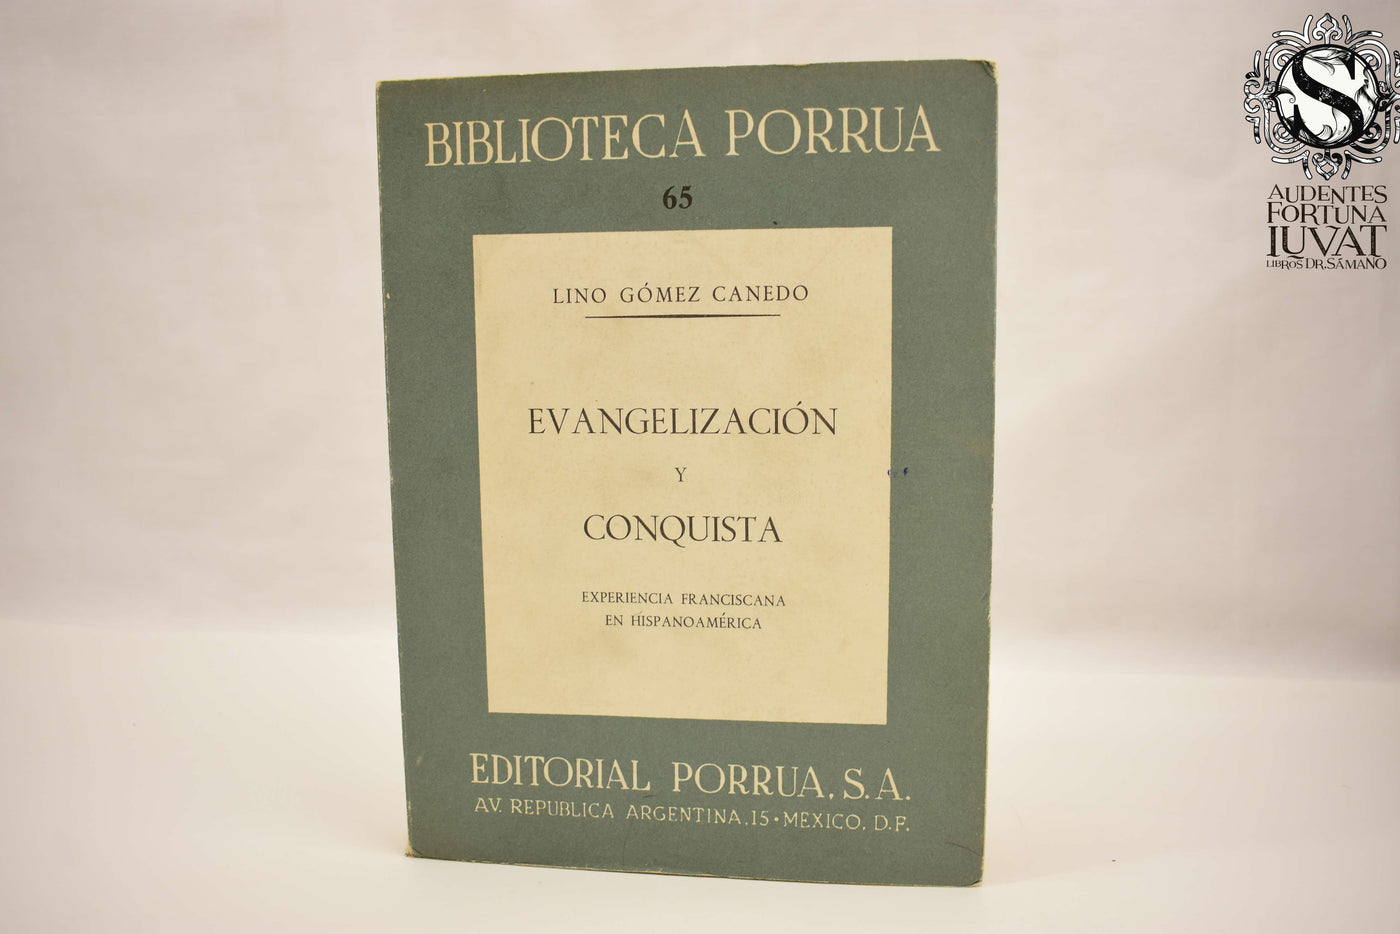 EVANGELIZACIÓN Y CONQUISTA - Lino Gómez Canedo